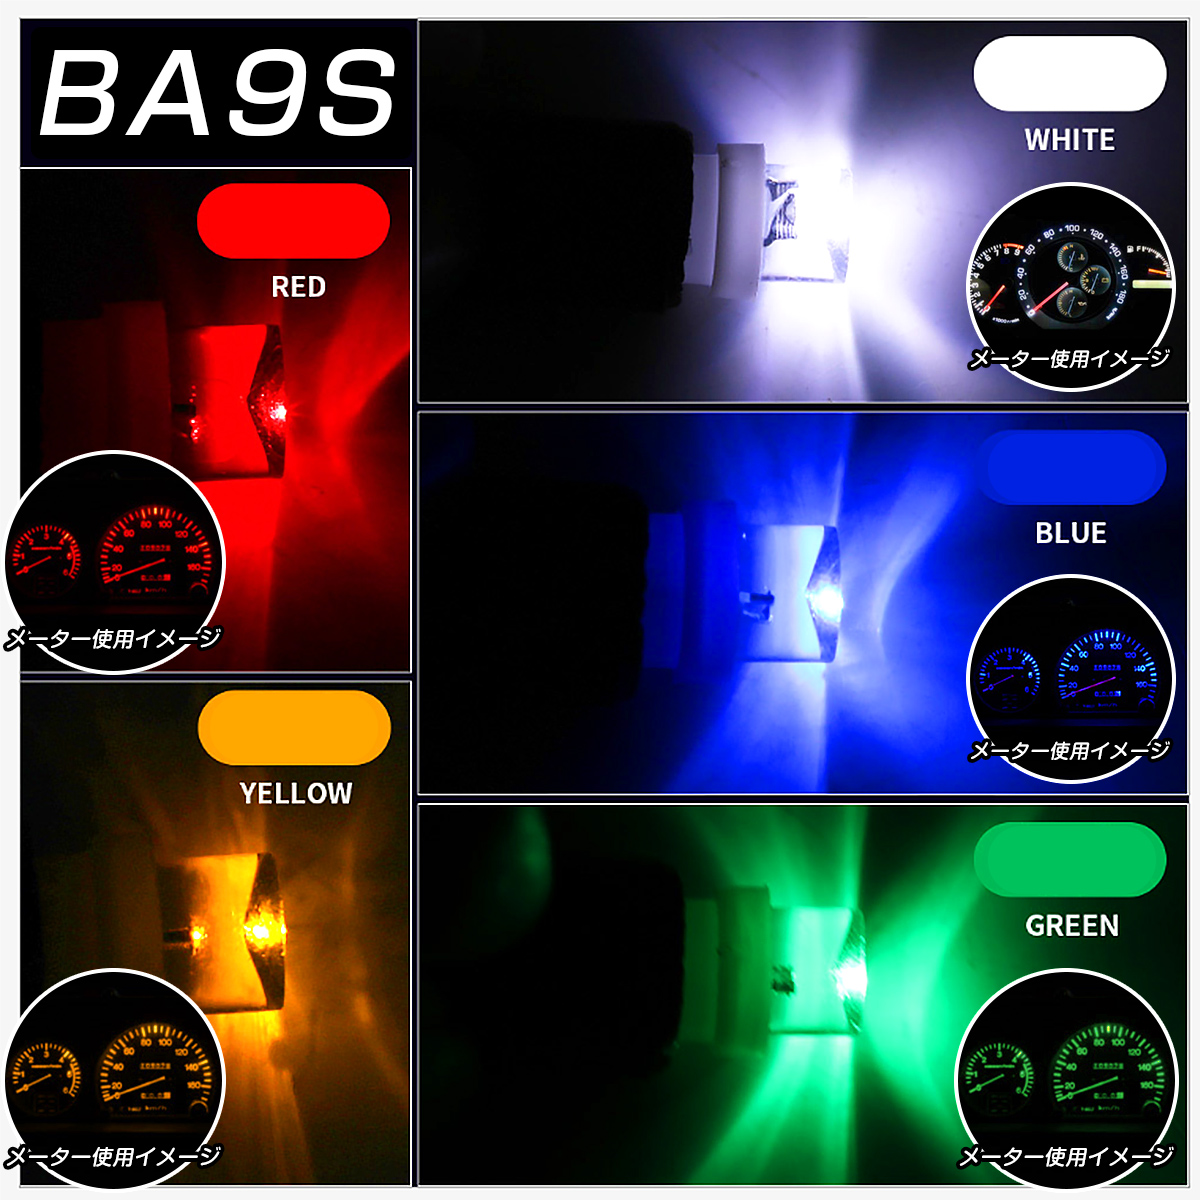 LED 口金 BA9S 青 メーター球 タコランプ インジケーター エアコンパネル 超拡散 全面発光 2個セット SDM便送料無料 1ヶ月保証